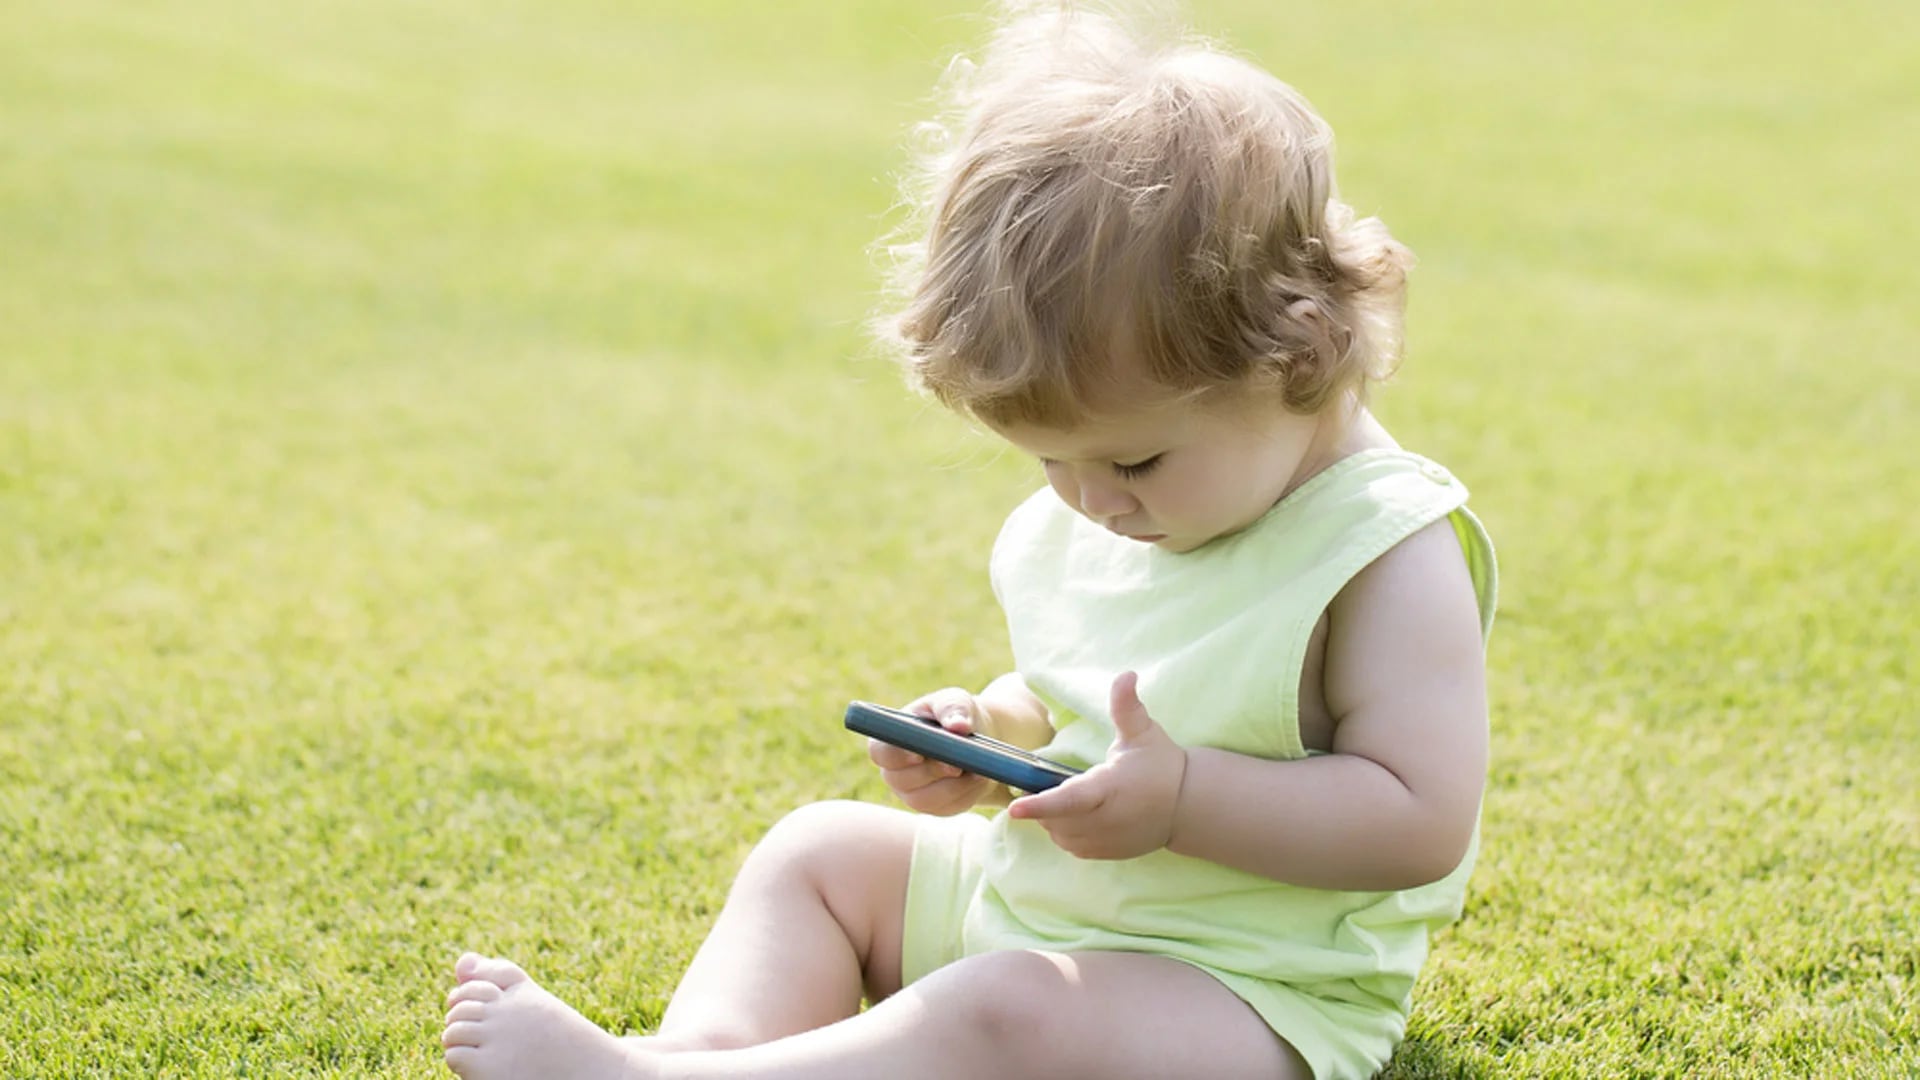 Se recomienda que los niños pequeños no utilicen demasiado los teléfonos móviles (Shutterstock)